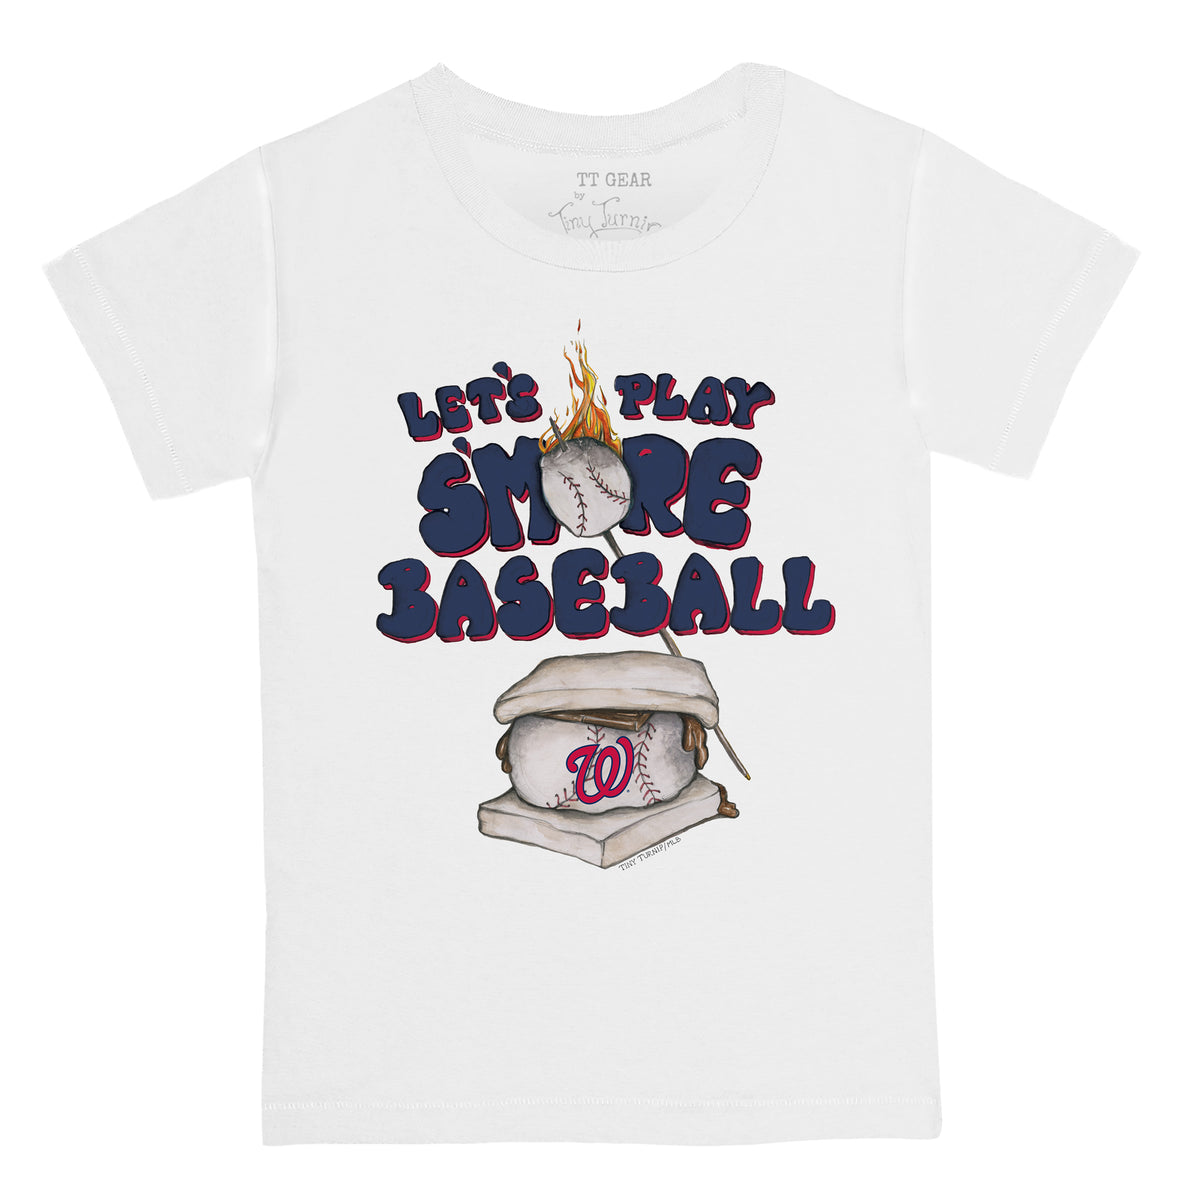 Women's Tiny Turnip Navy Washington Nationals Stitched Baseball T-Shirt Size: Extra Large